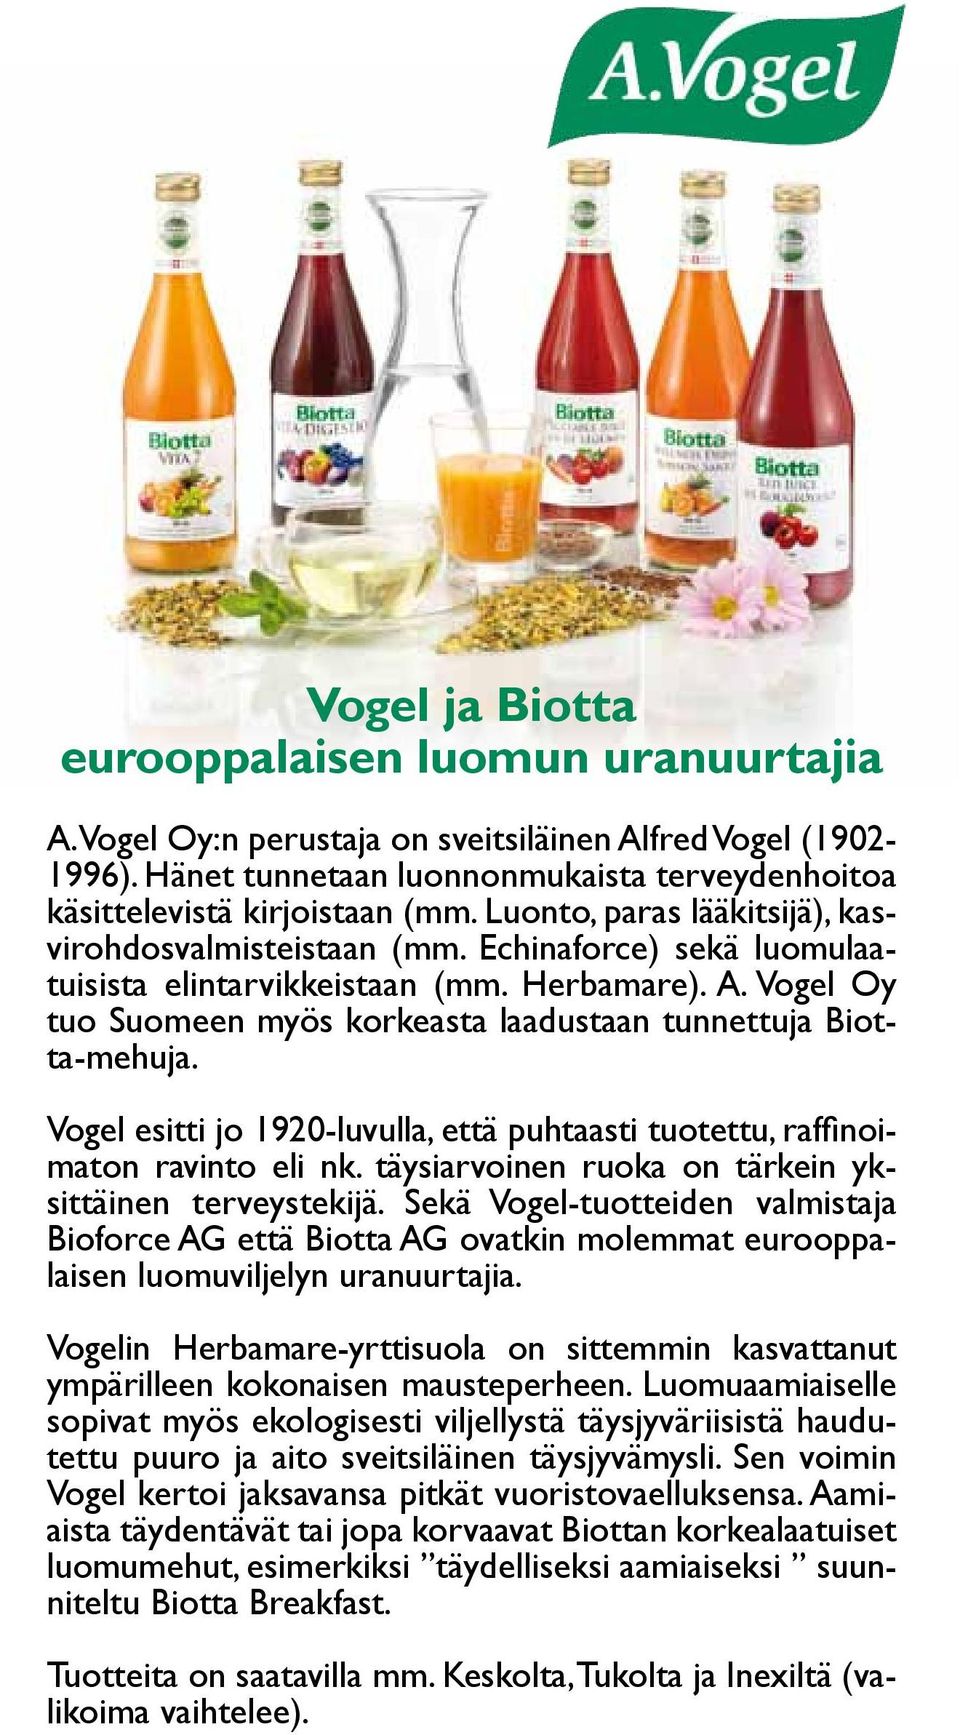 Vogel Oy tuo Suomeen myös korkeasta laadustaan tunnettuja Biotta-mehuja. Vogel esitti jo 1920-luvulla, että puhtaasti tuotettu, raffinoimaton ravinto eli nk.